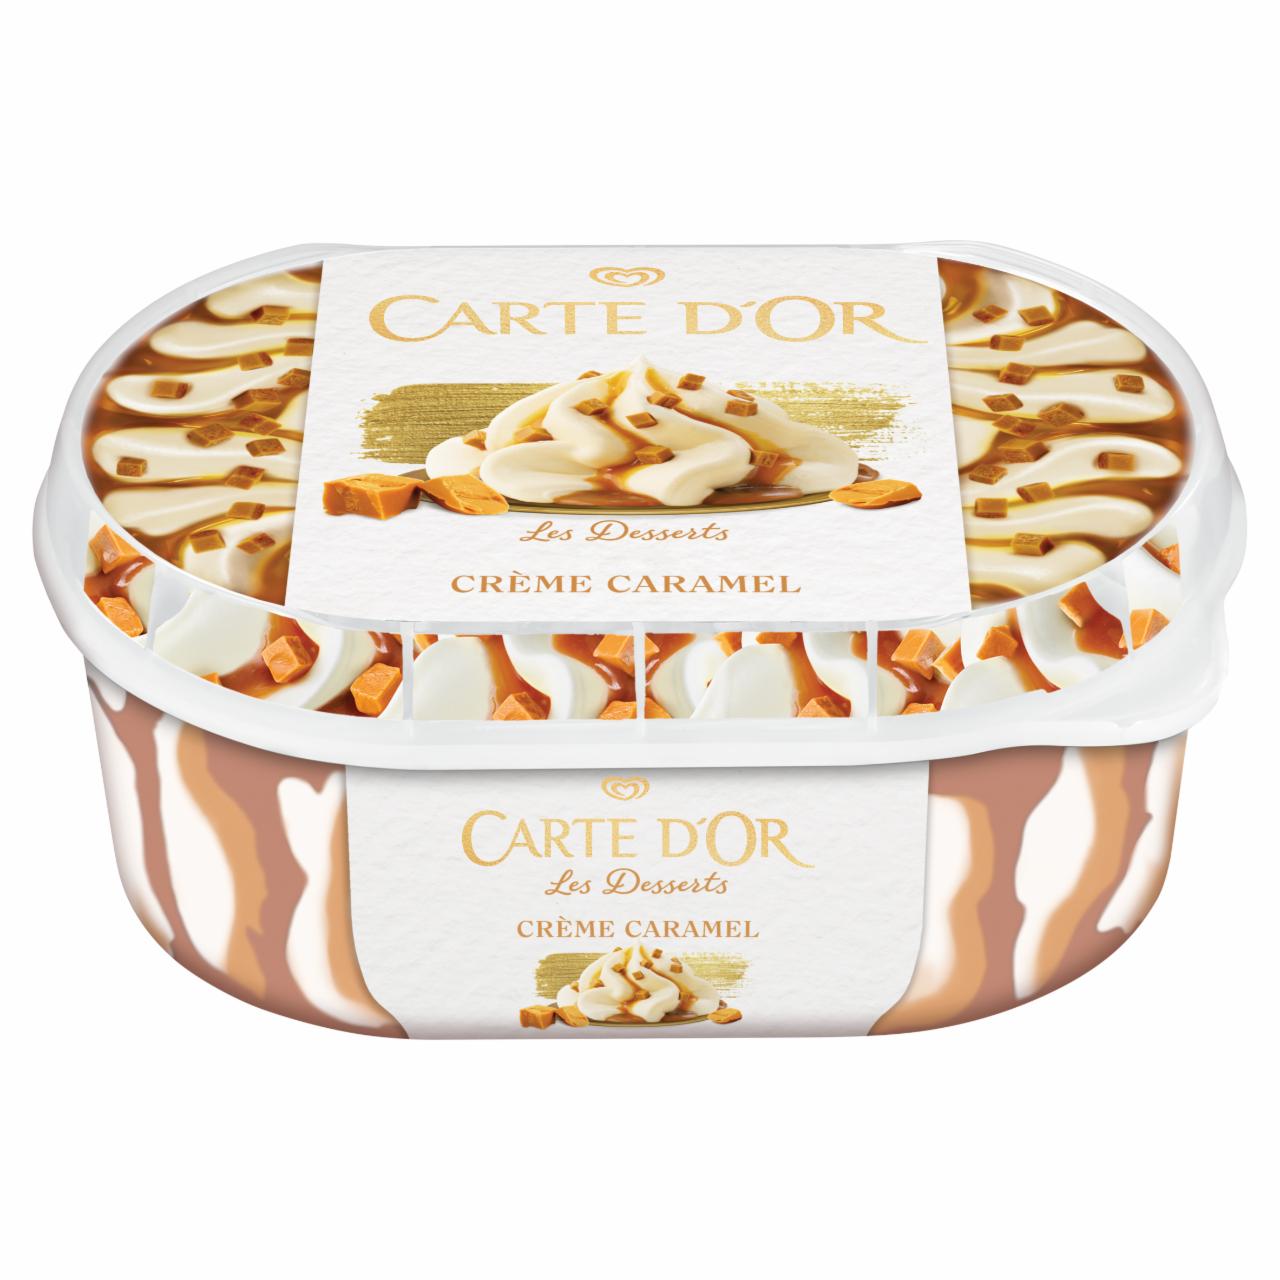 Fotografie - Les Desserts Crème caramel Carte d'Or